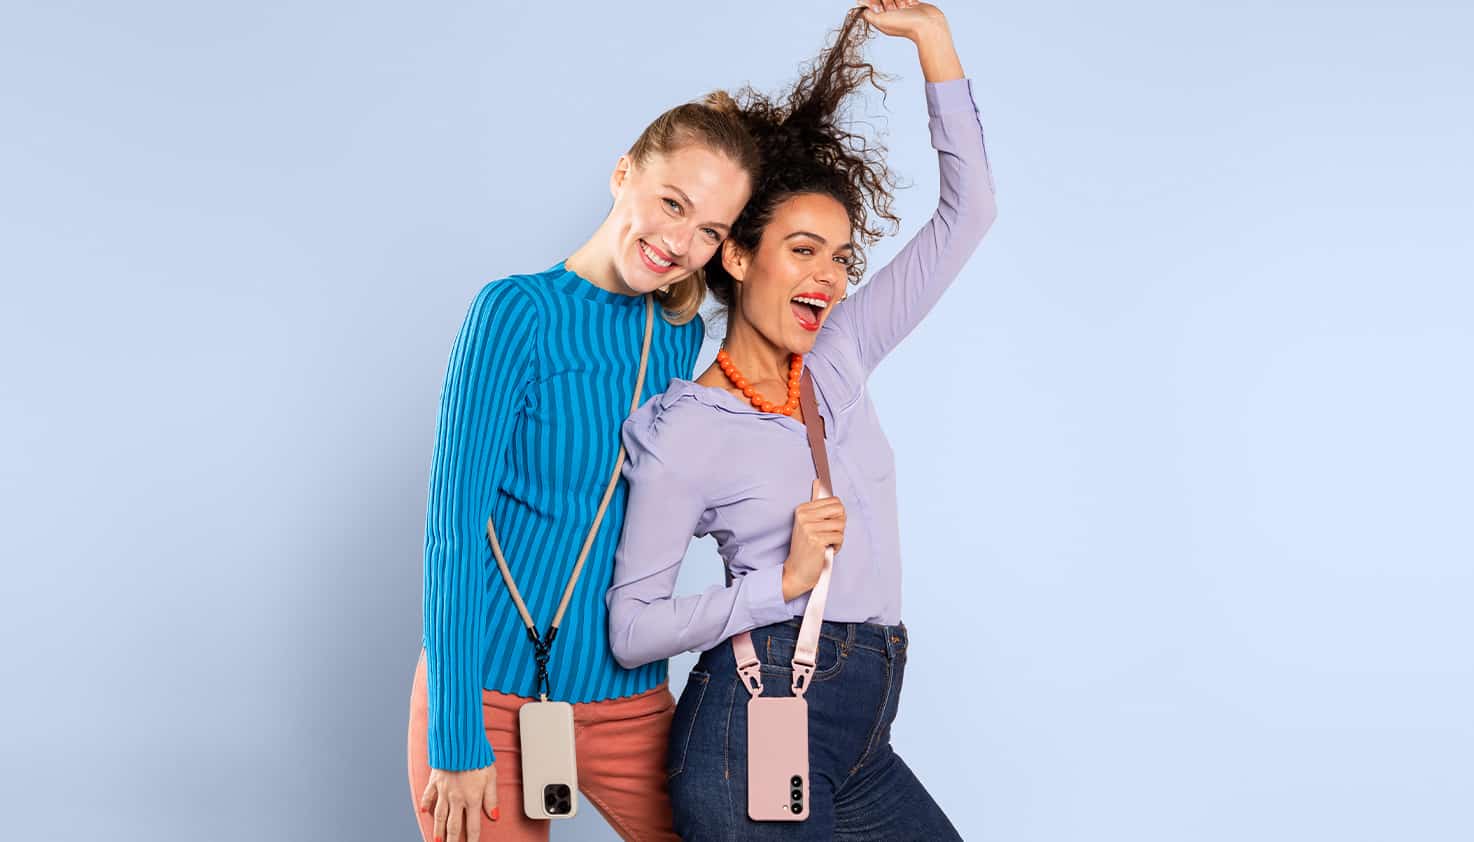 Zwei weibliche Models lächeln und tragen jeweils eine Handyhülle mit einem Band daran.